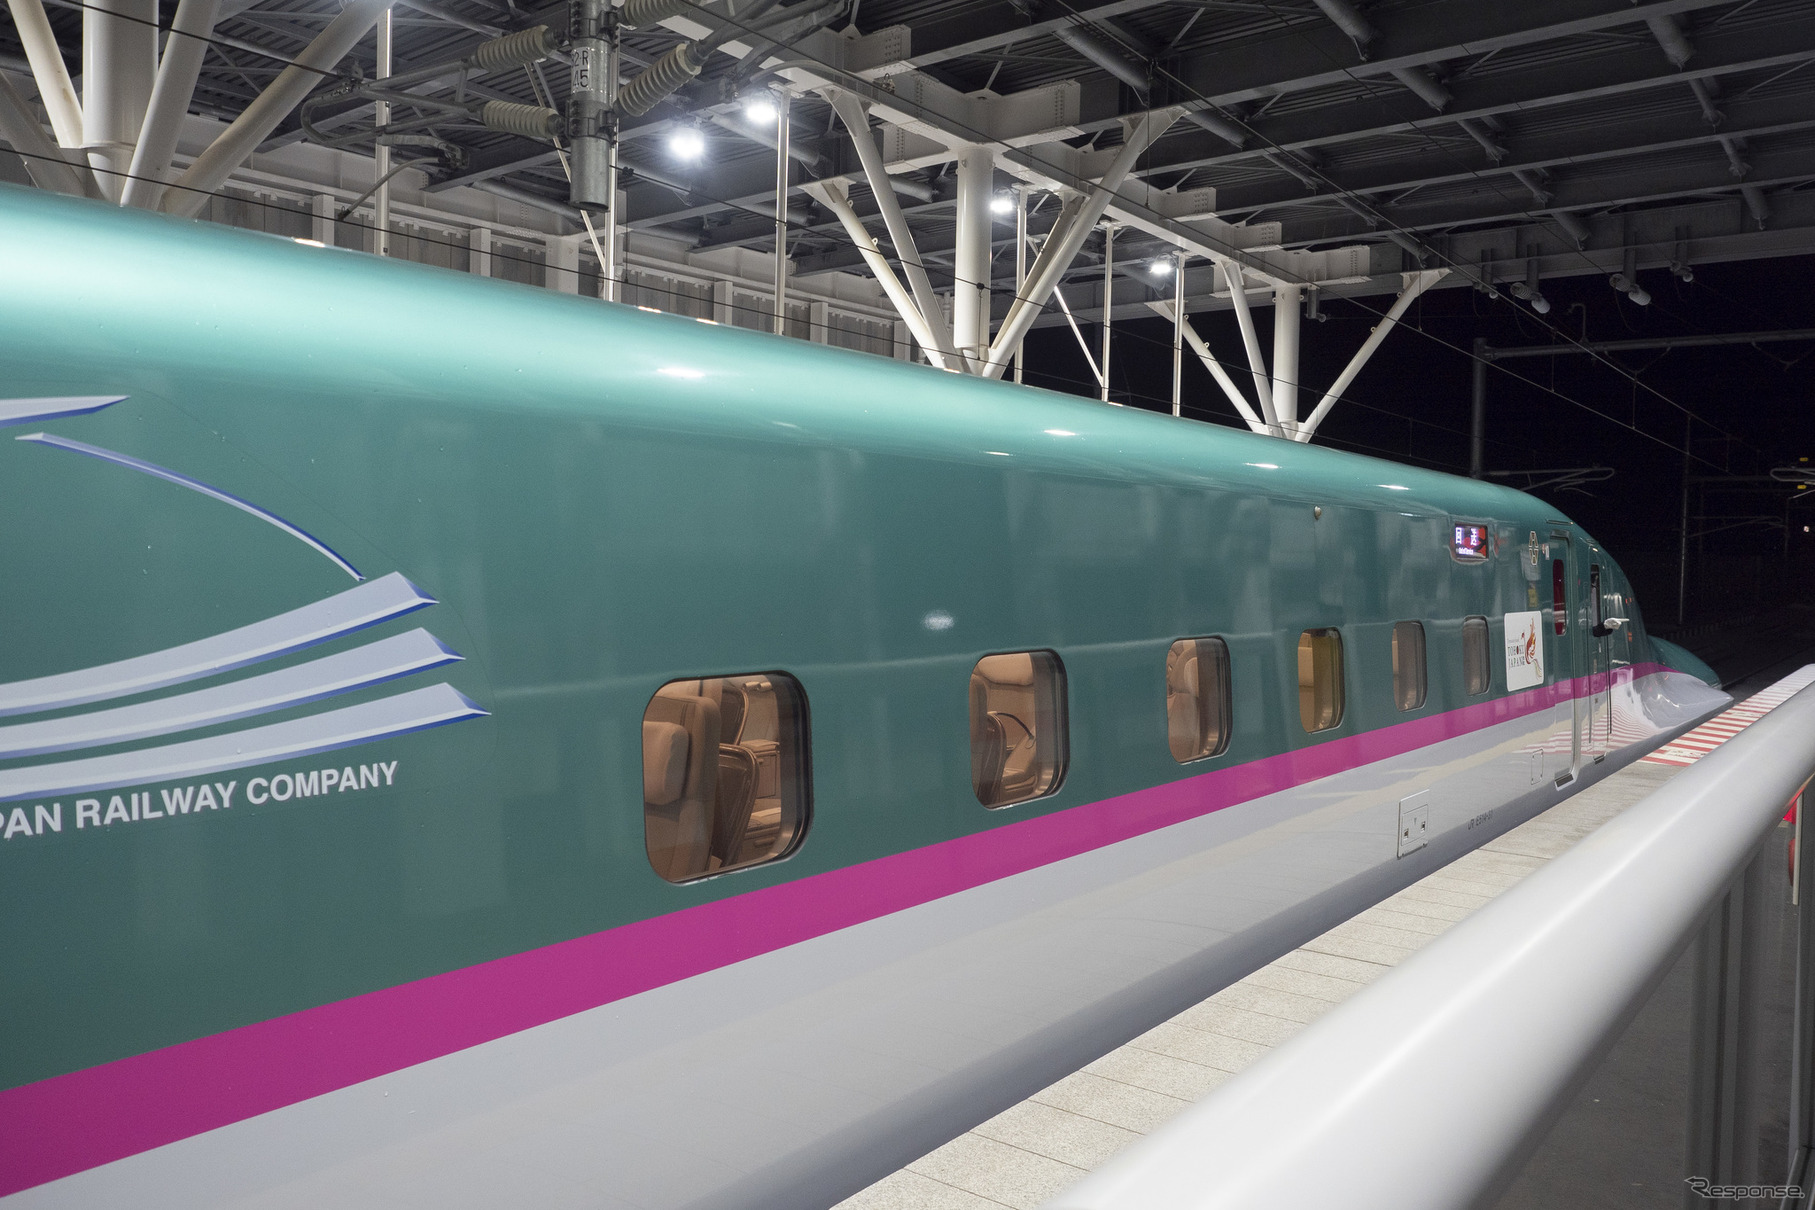 5月31日まで車内サービスが中止されている北海道新幹線や北陸新幹線上越妙高～金沢間を含む「グランクラス」。切符の発売は6月30日までの運転分が中止されているが、7月以降の運転分についても継続される。写真は東北・北海道新幹線『はやぶさ』10号車の「グランクラス」。